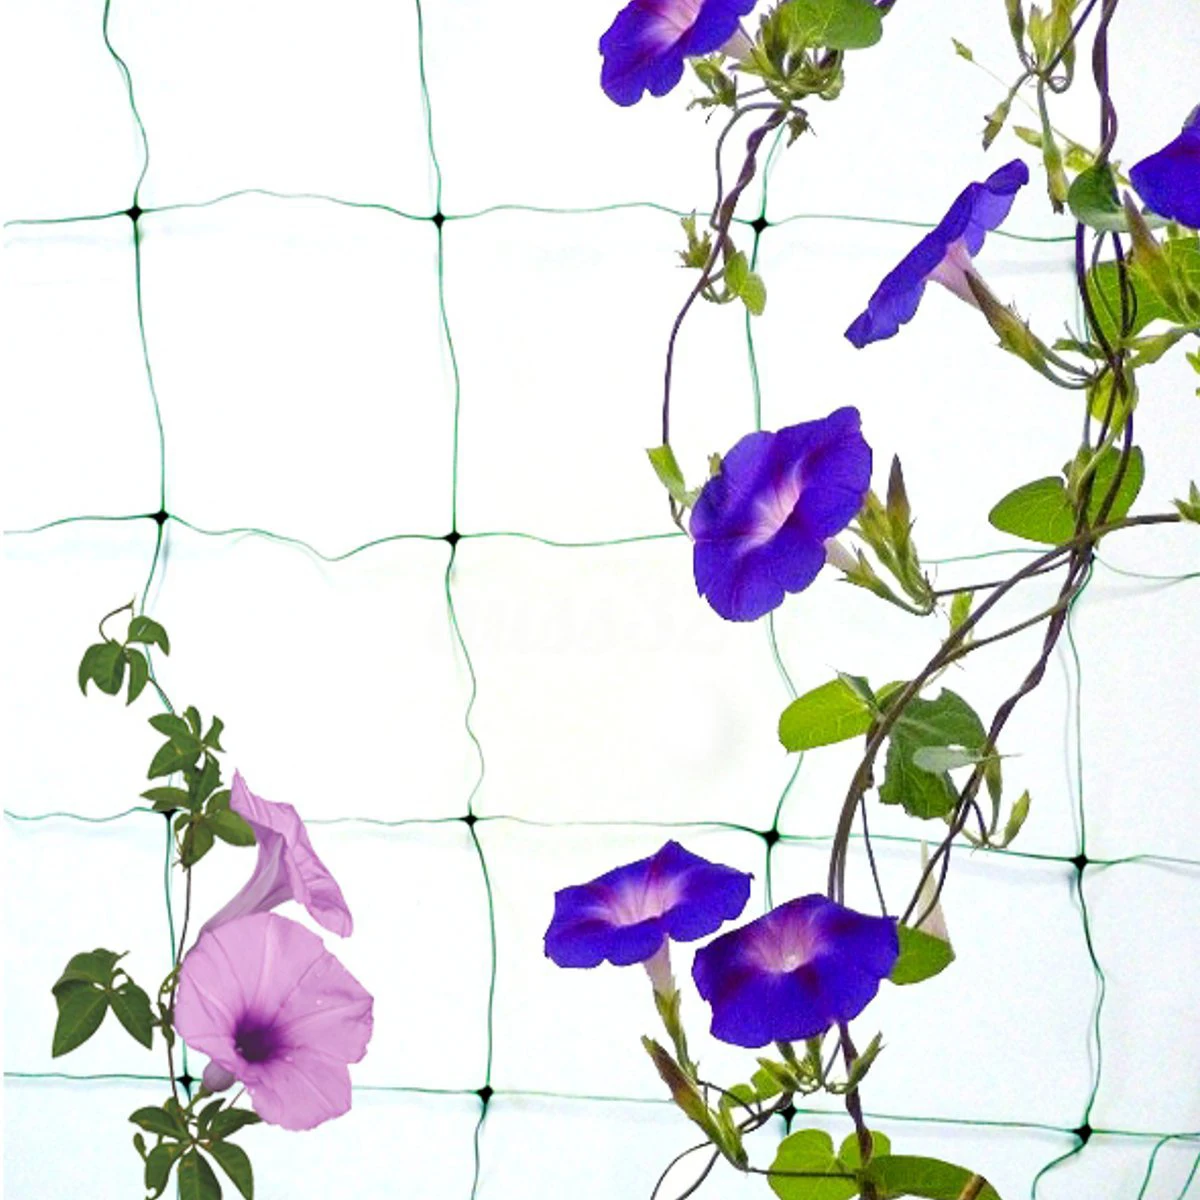 IALJ Топ сад зеленый нейлон решетчатая сетка поддержка вьющееся растение сетки для автомобиля расти забор